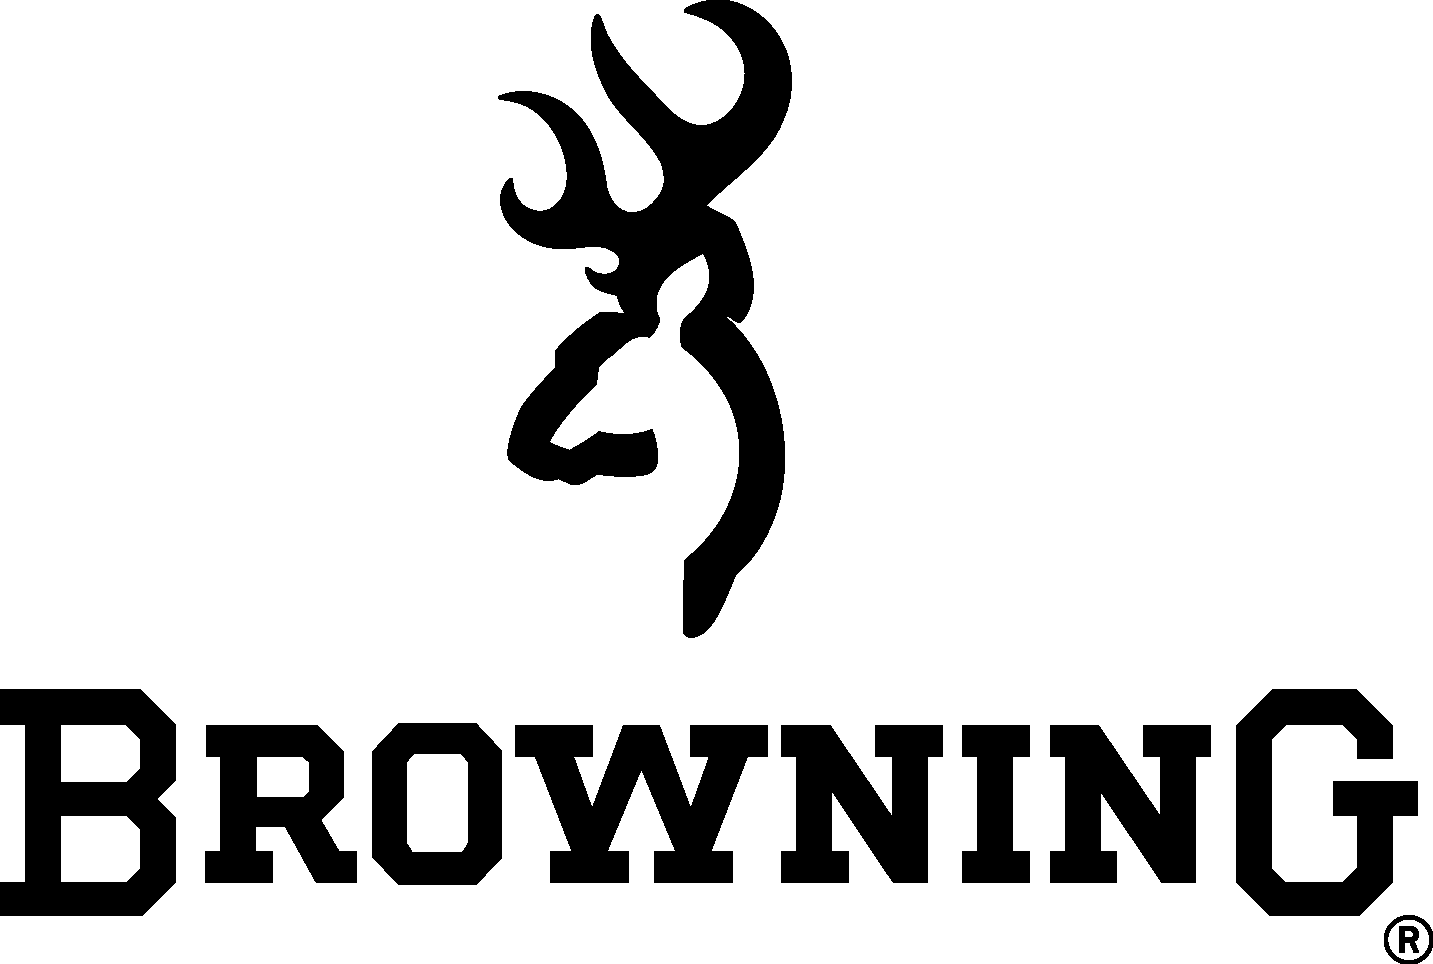 Browning Logo